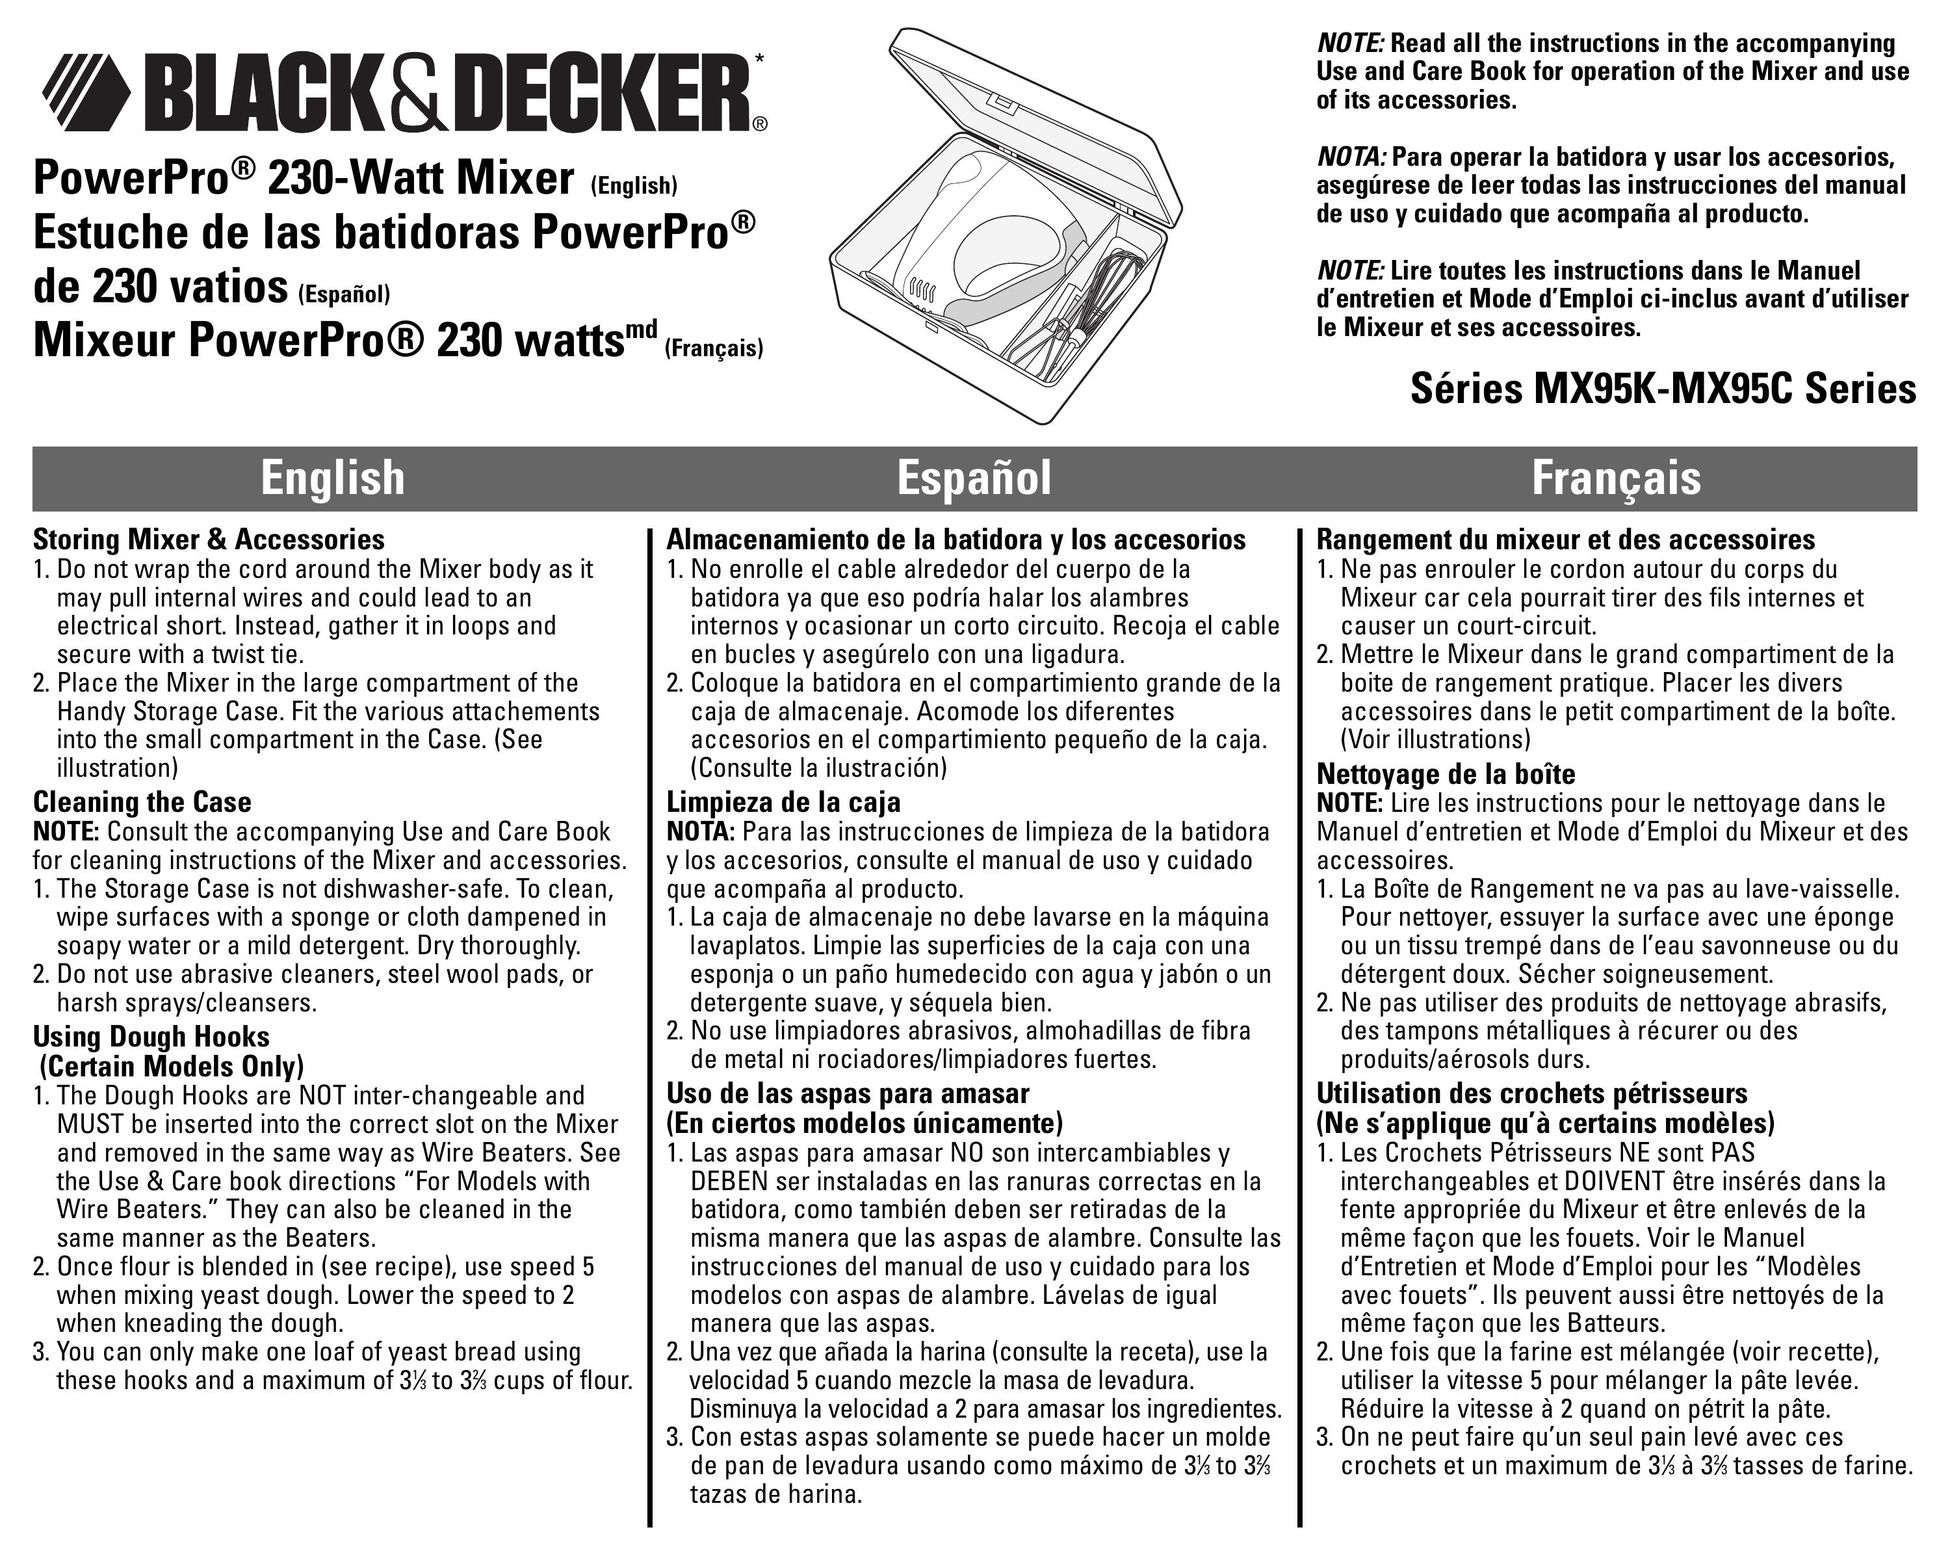 Black & Decker MX95K Mixer User Manual